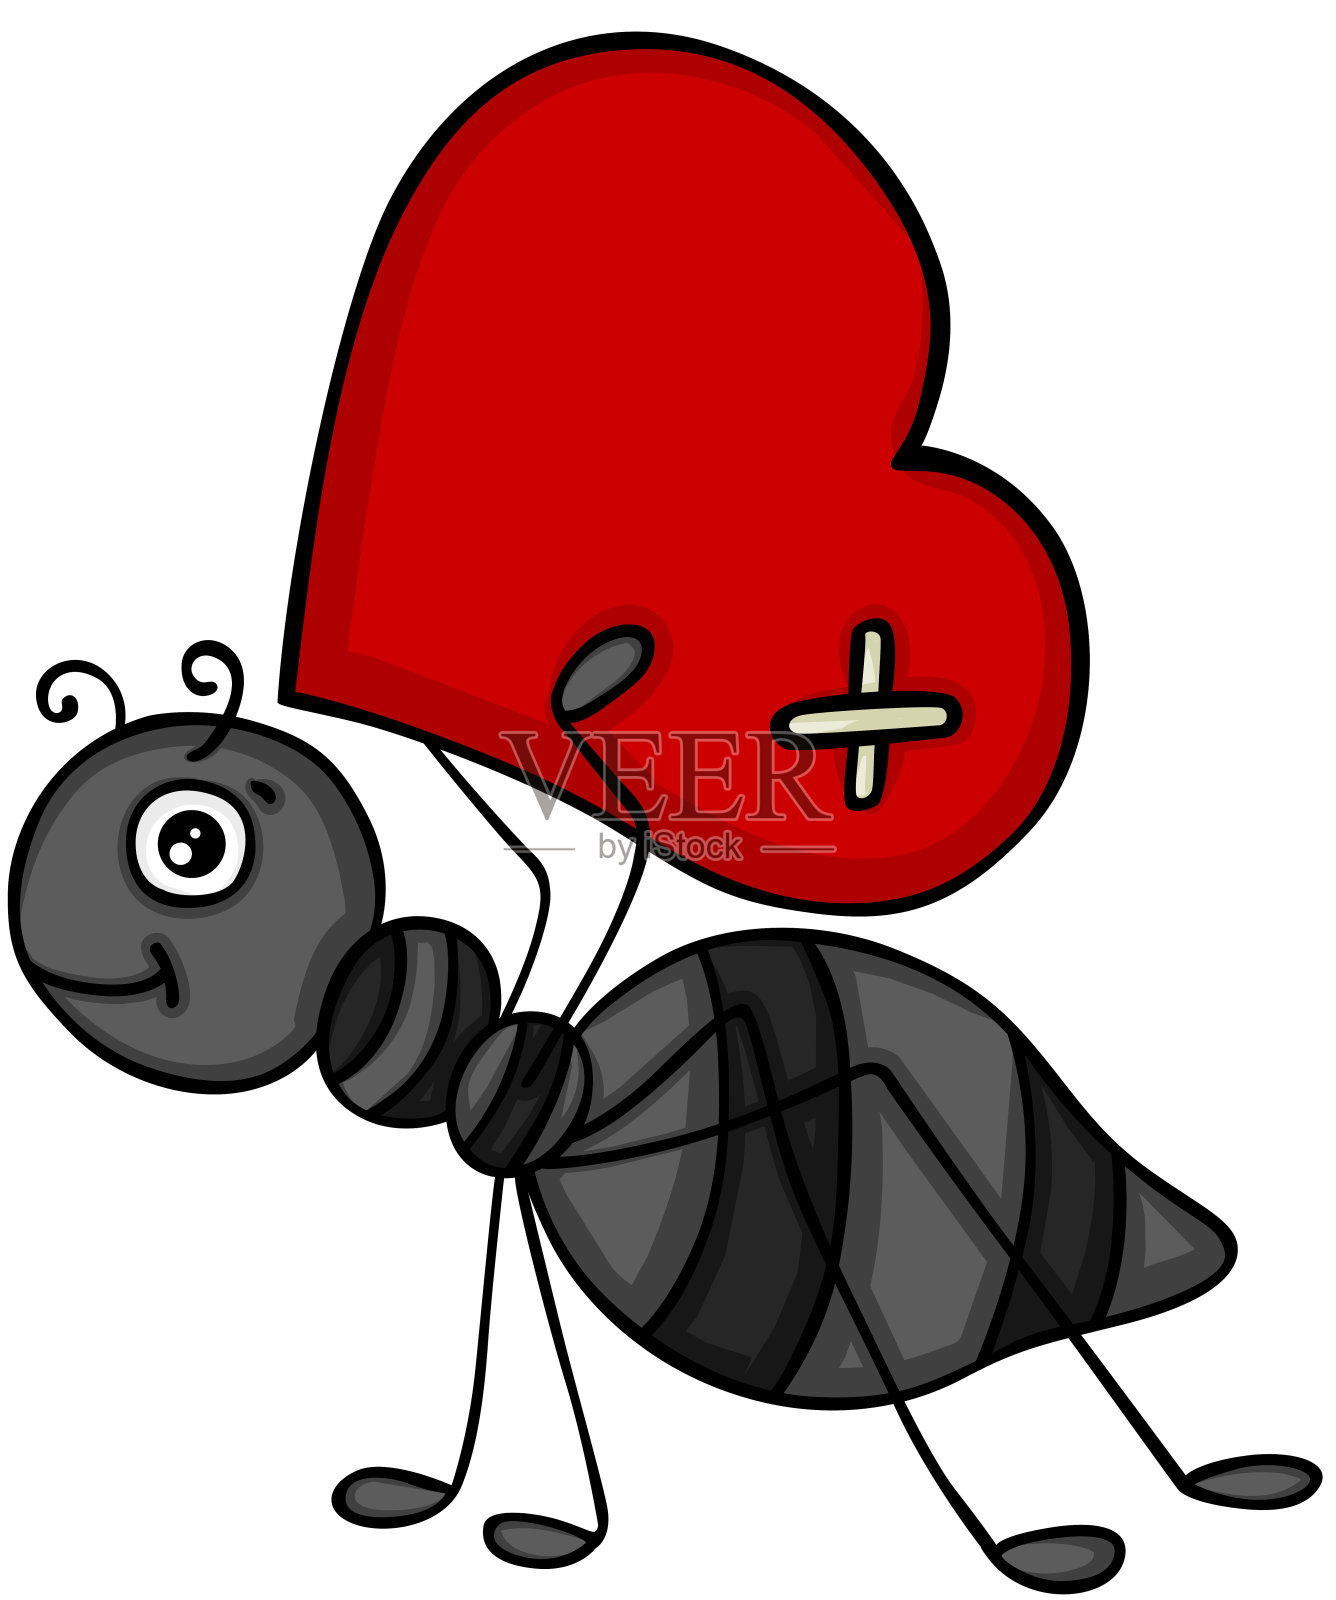 携带红心的蚂蚁设计元素图片